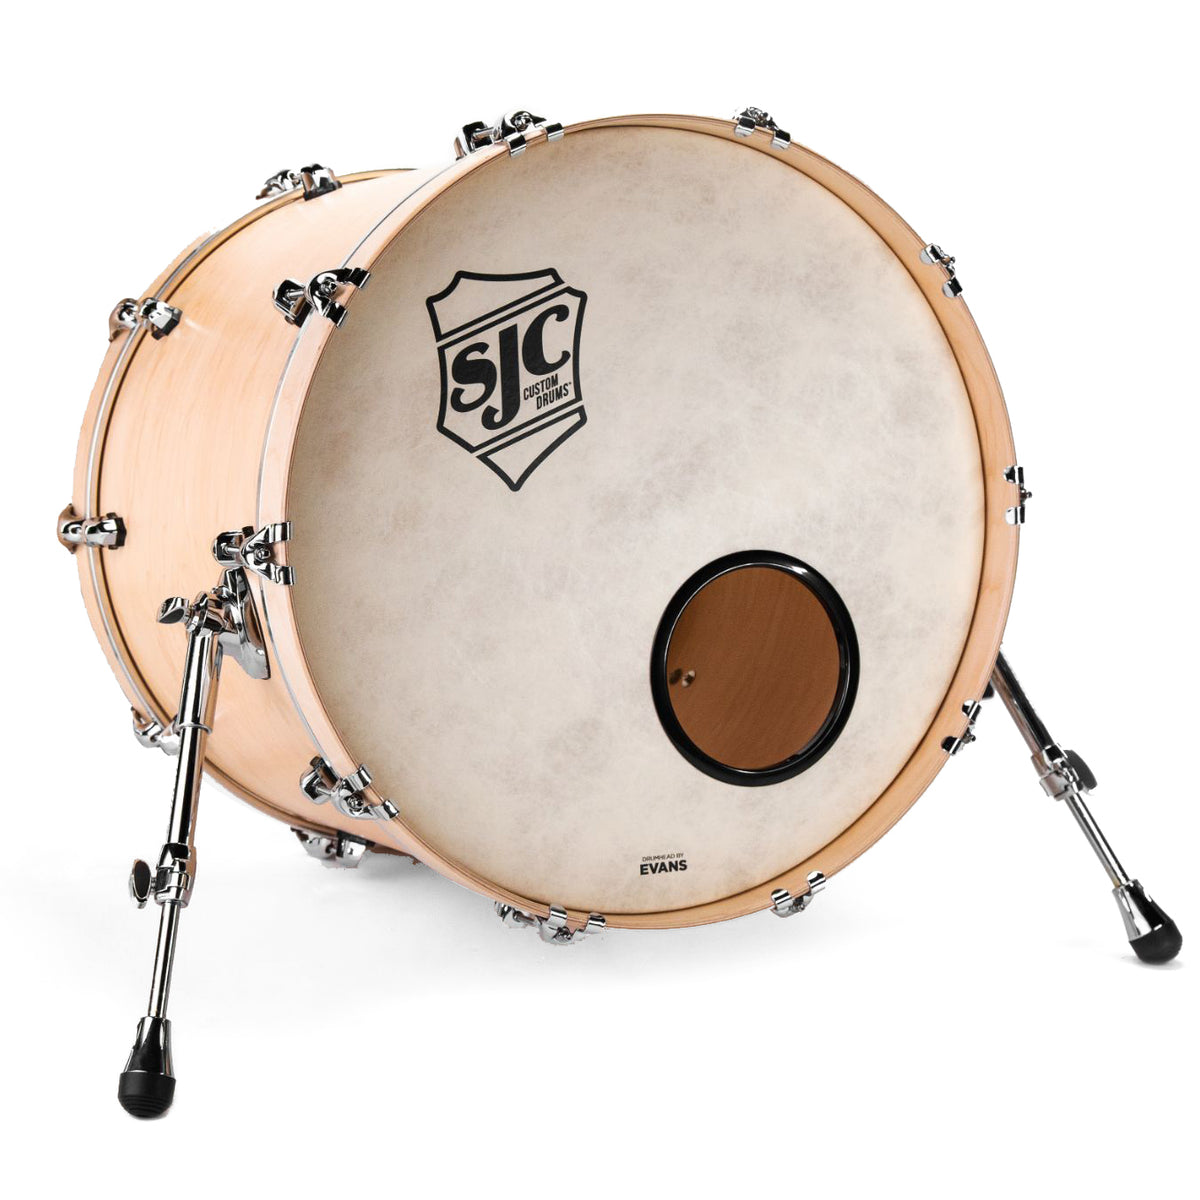 SJC Custom Drums Tour Series